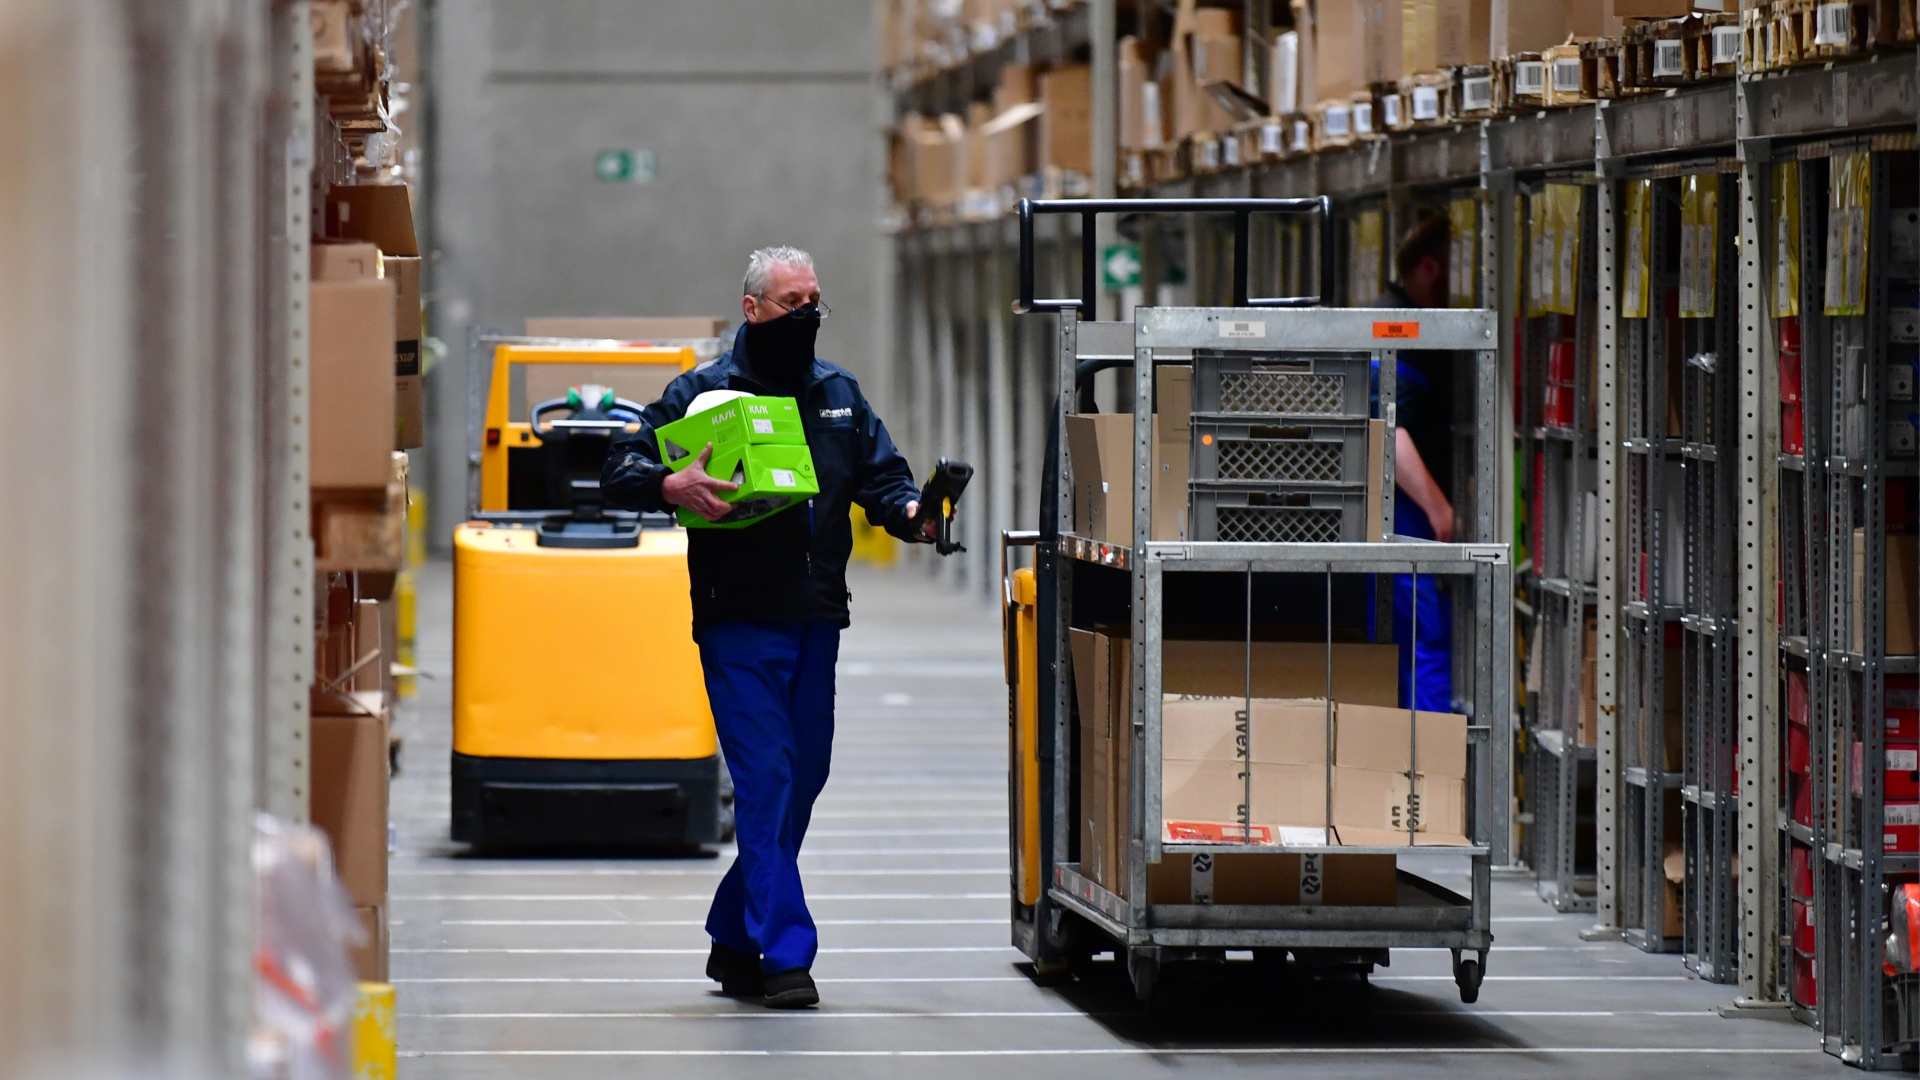 Gabelstapler steht zwischen Regalen bei einem Logistikunternehmen | dpa